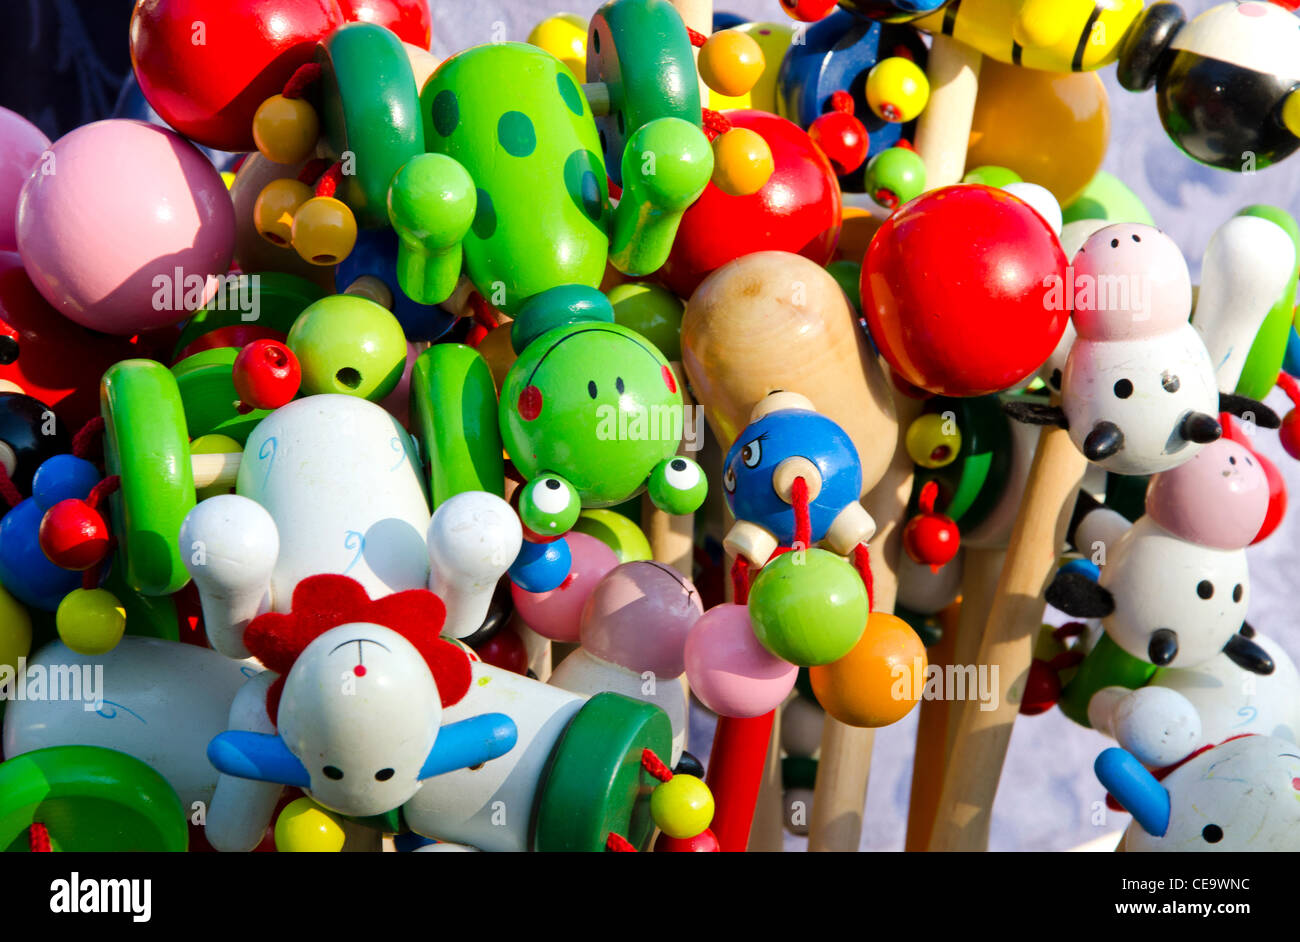 Primo piano di interessanti in legno colorato dei giocattoli venduti in commercio equo e solidale. Foto Stock